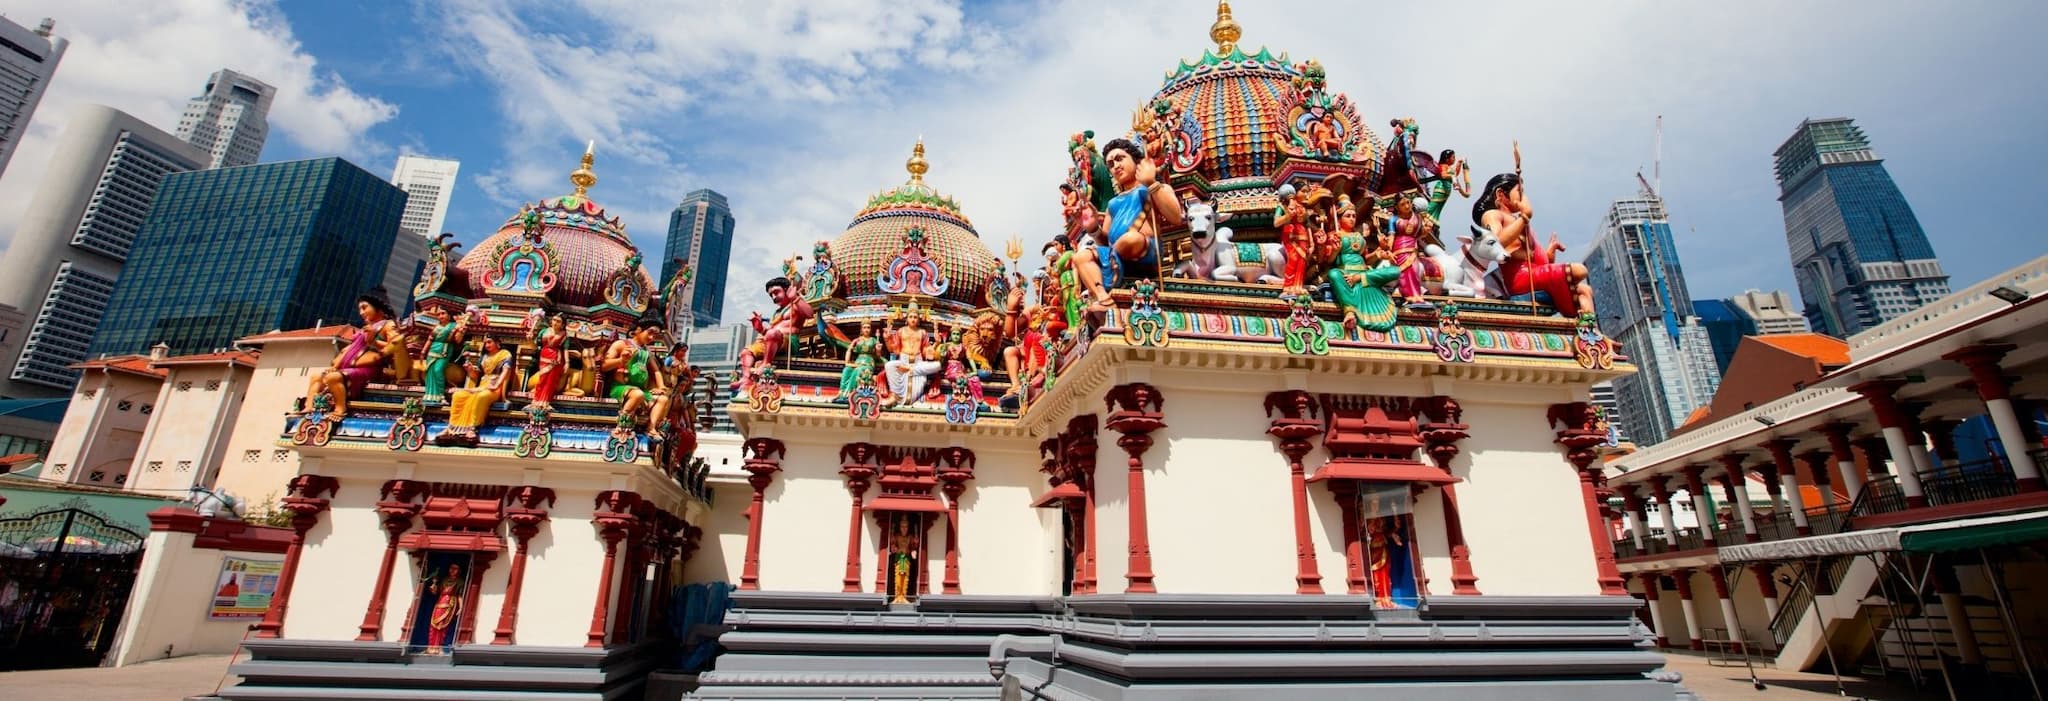 Sri Mariamman temple